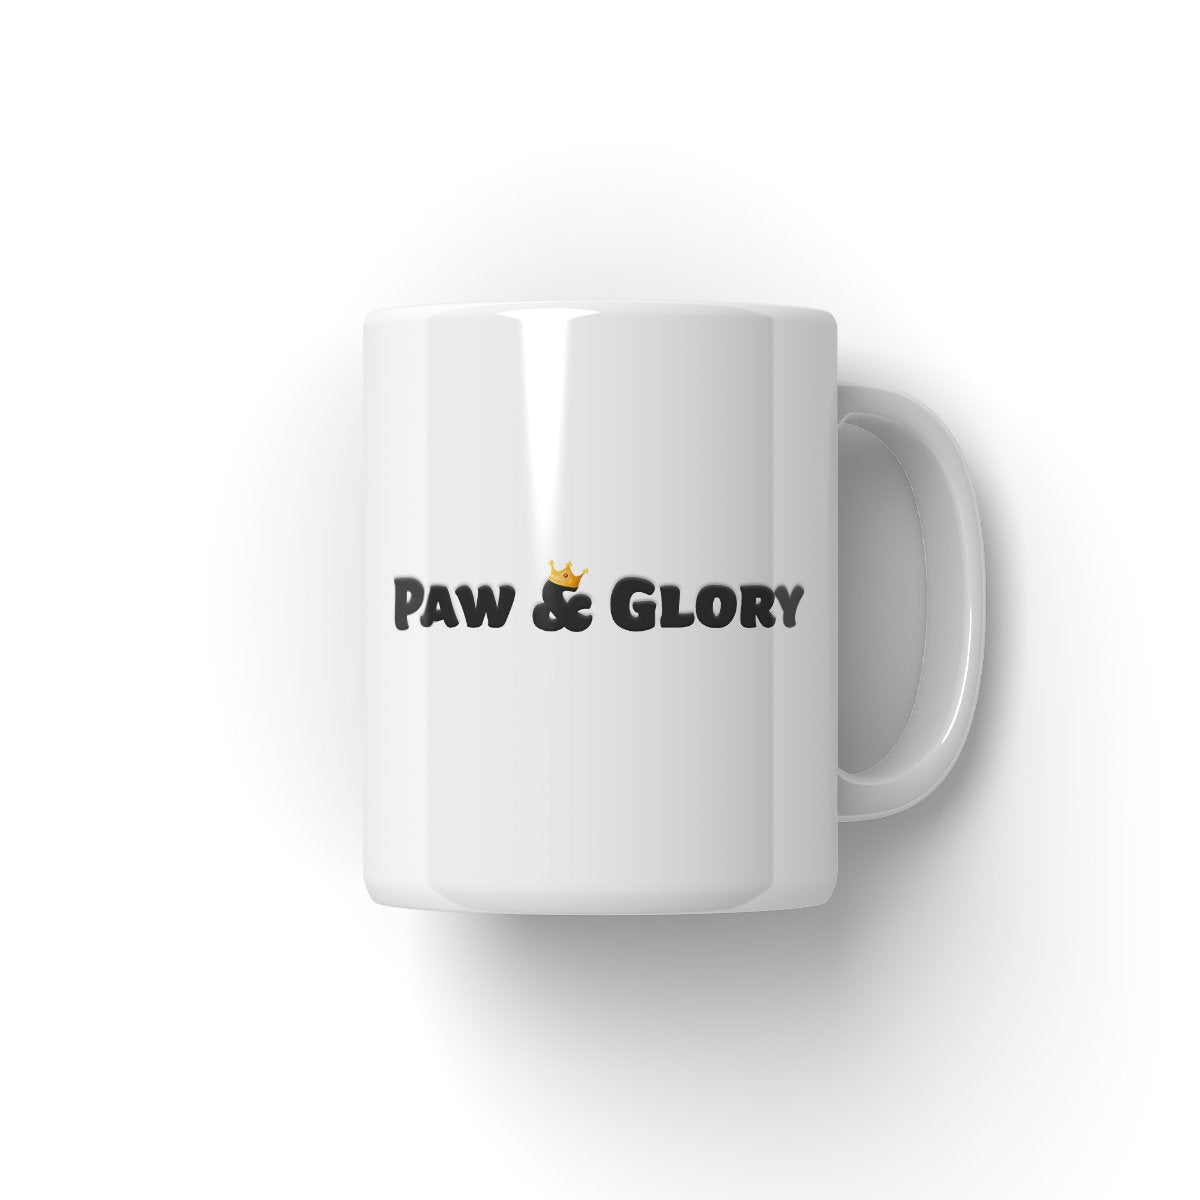 LA Pawlaxy Paw & Glory, paw and glory, dog on mug, personalised dog mug, custom dog face mug, coffee mug with dog picture, pet mug portraits, dog mugs custom, Pet Portrait Mug